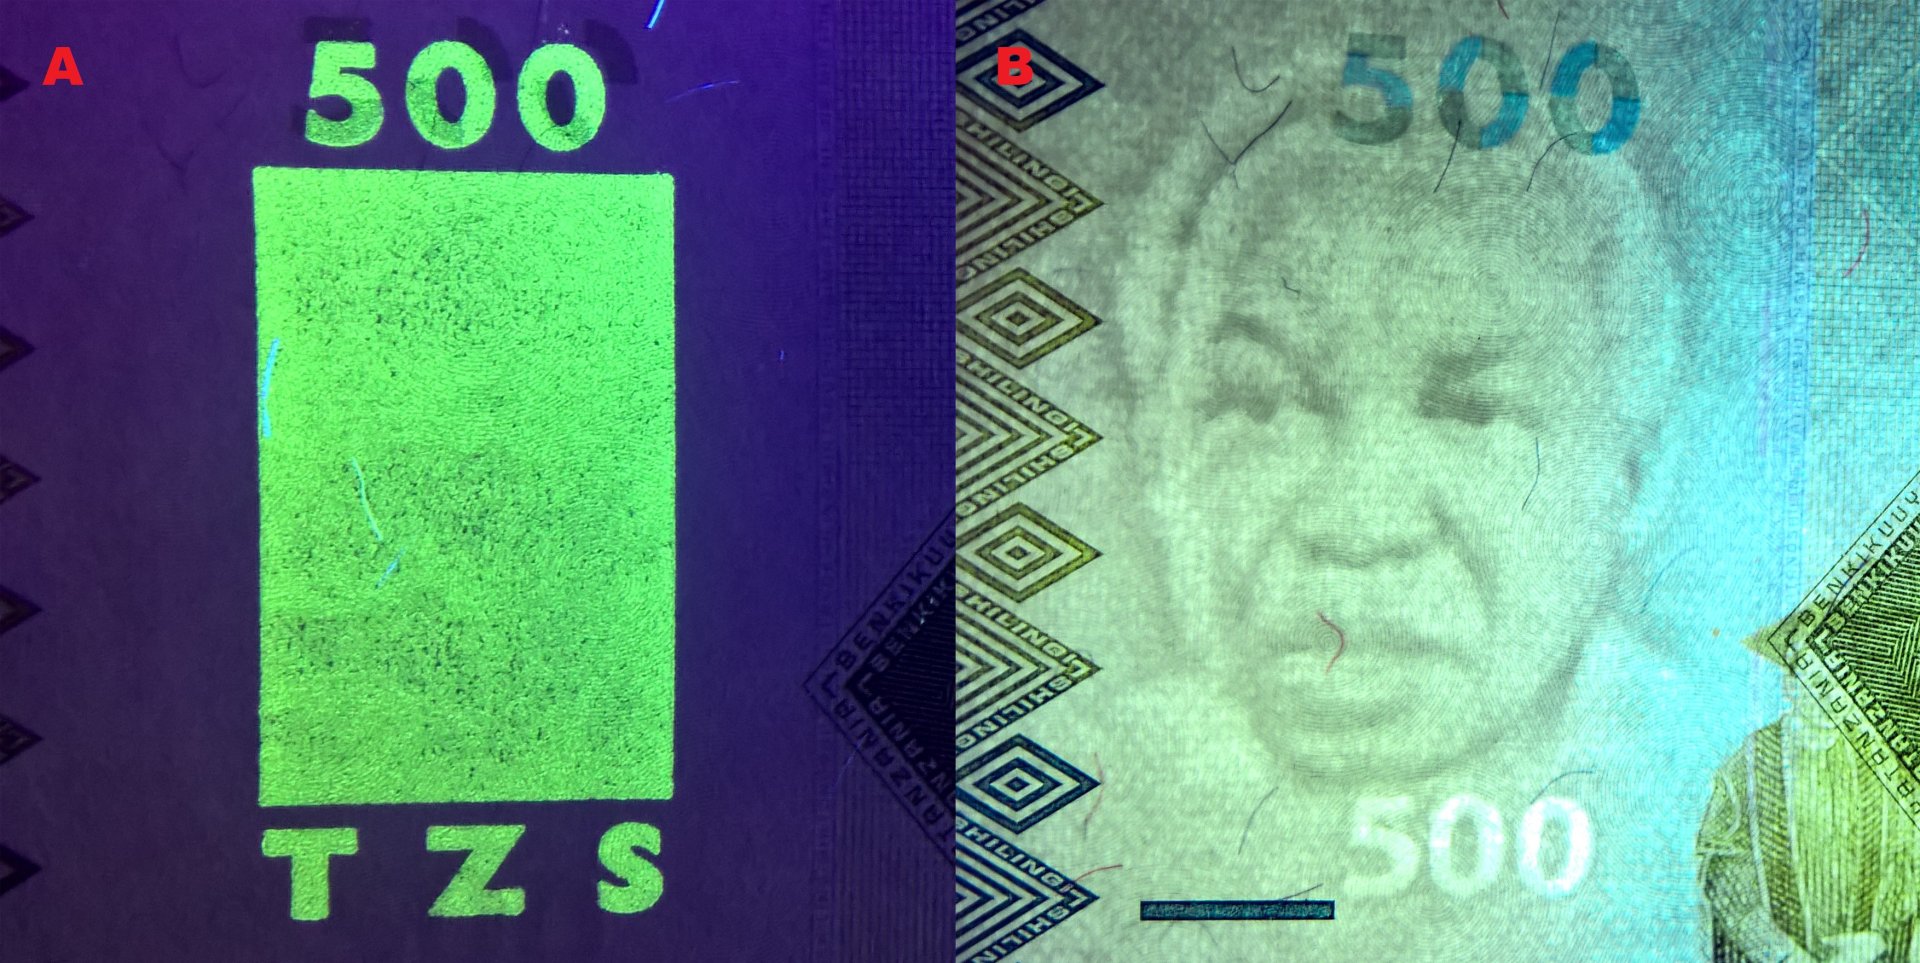 Obr. 2. A) UV pole, nominál a akronym měny. B) Portrétní vodoznak – první prezident Tanzanie – mwalimu Julius Kambarage Nyerere, nominál "500" nahoře jako soutisková značka a dole jako „500“ elektrotype.